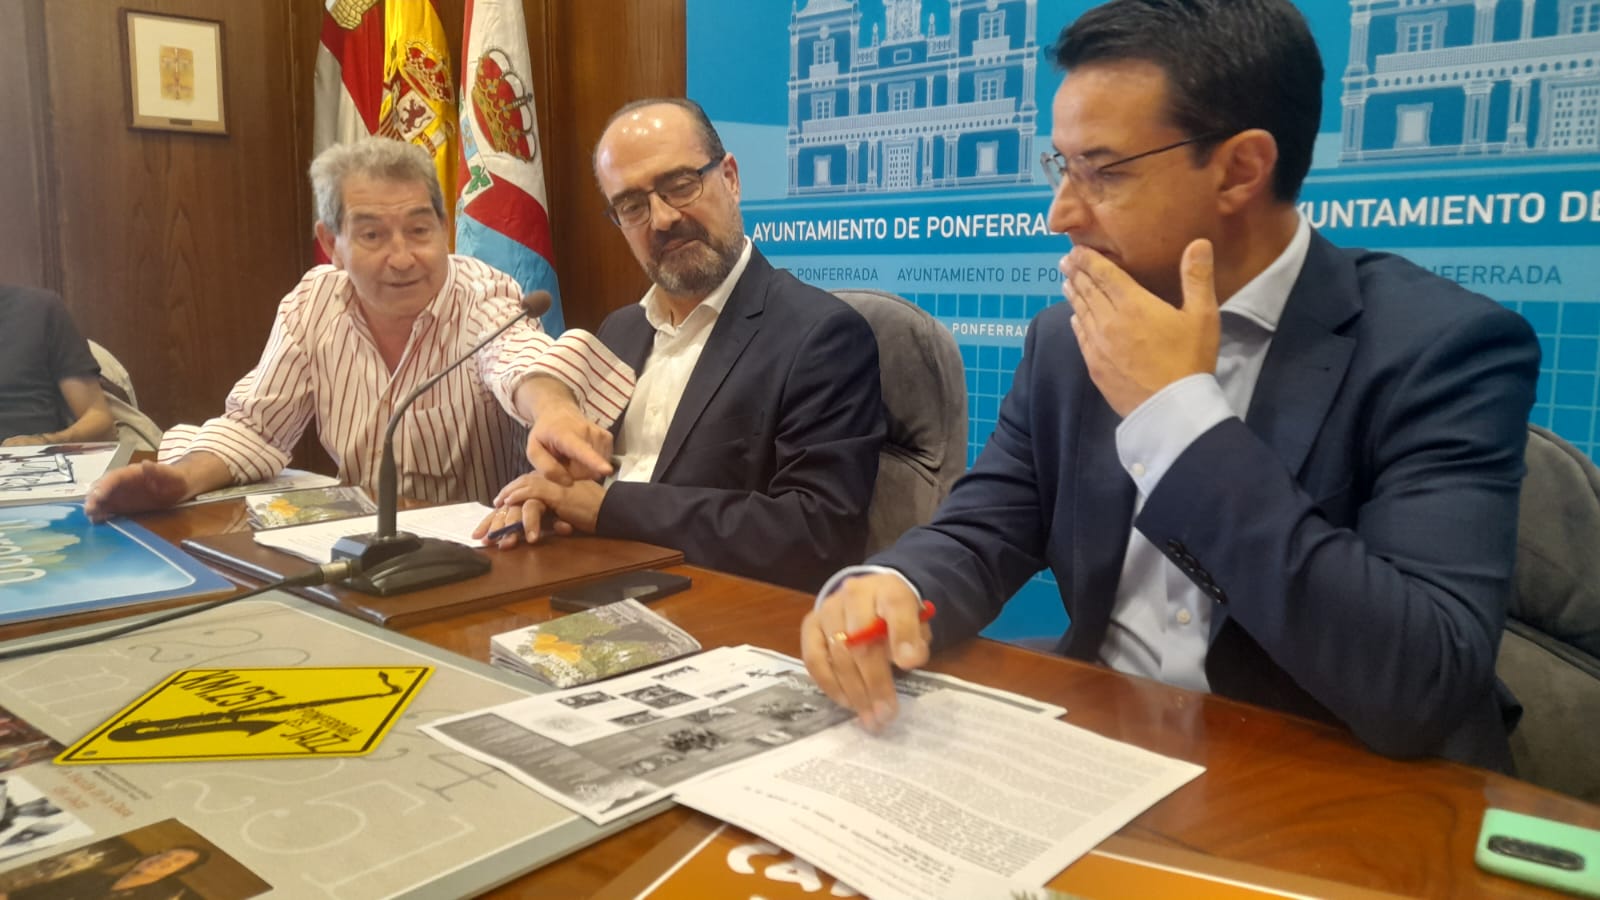 Presentación del Es.cultura en el Ayuntamiento de Ponferrada. | MAR IGLESIAS